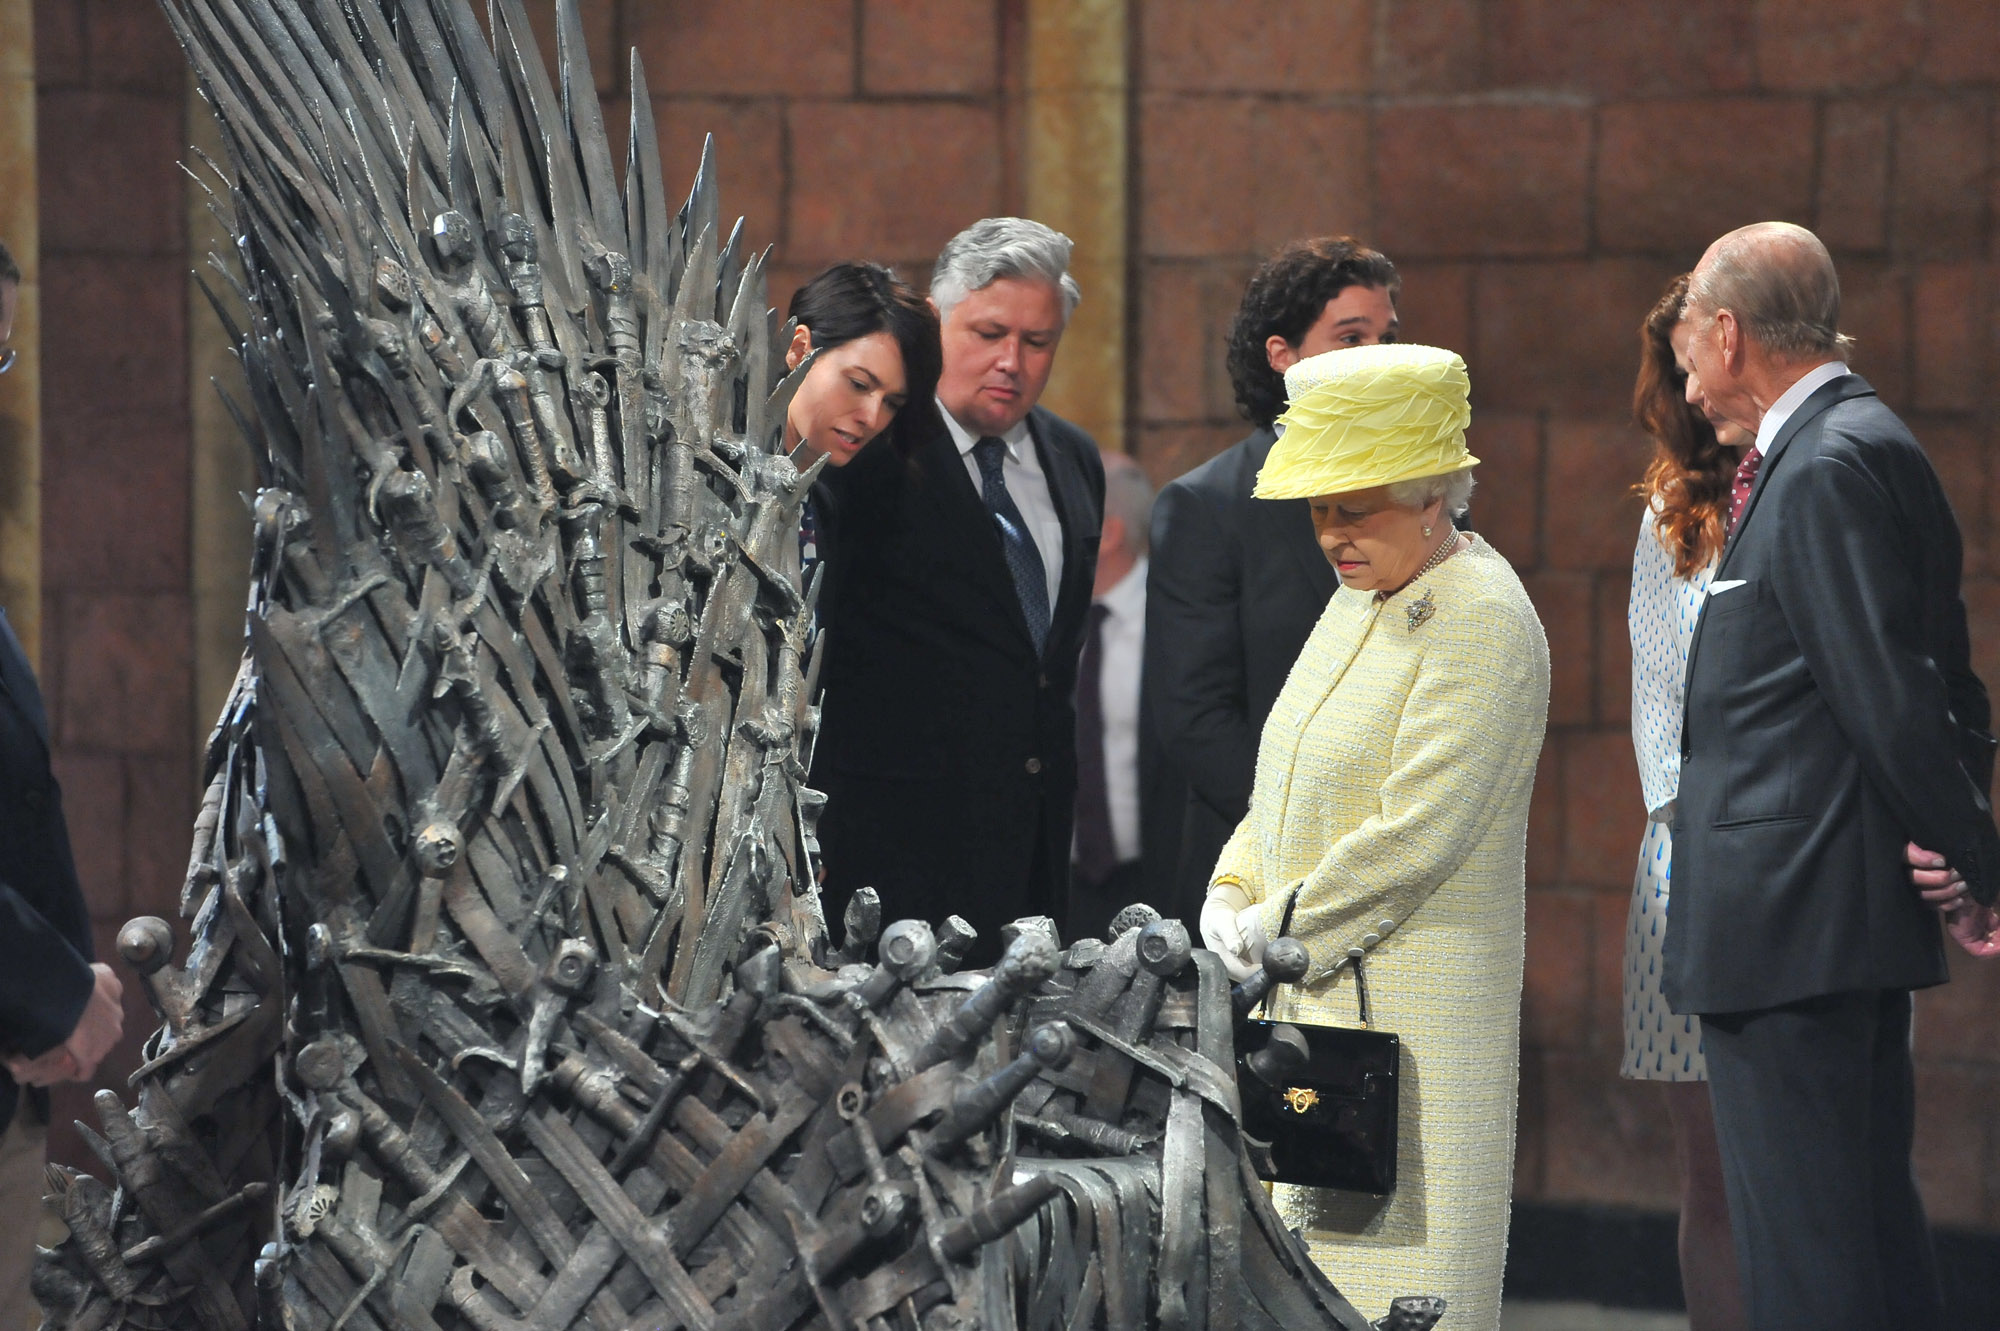 Nem ült fel ugyan a vastrónra, de a sajátját már hetven éve foglalja el II. Erzsébet